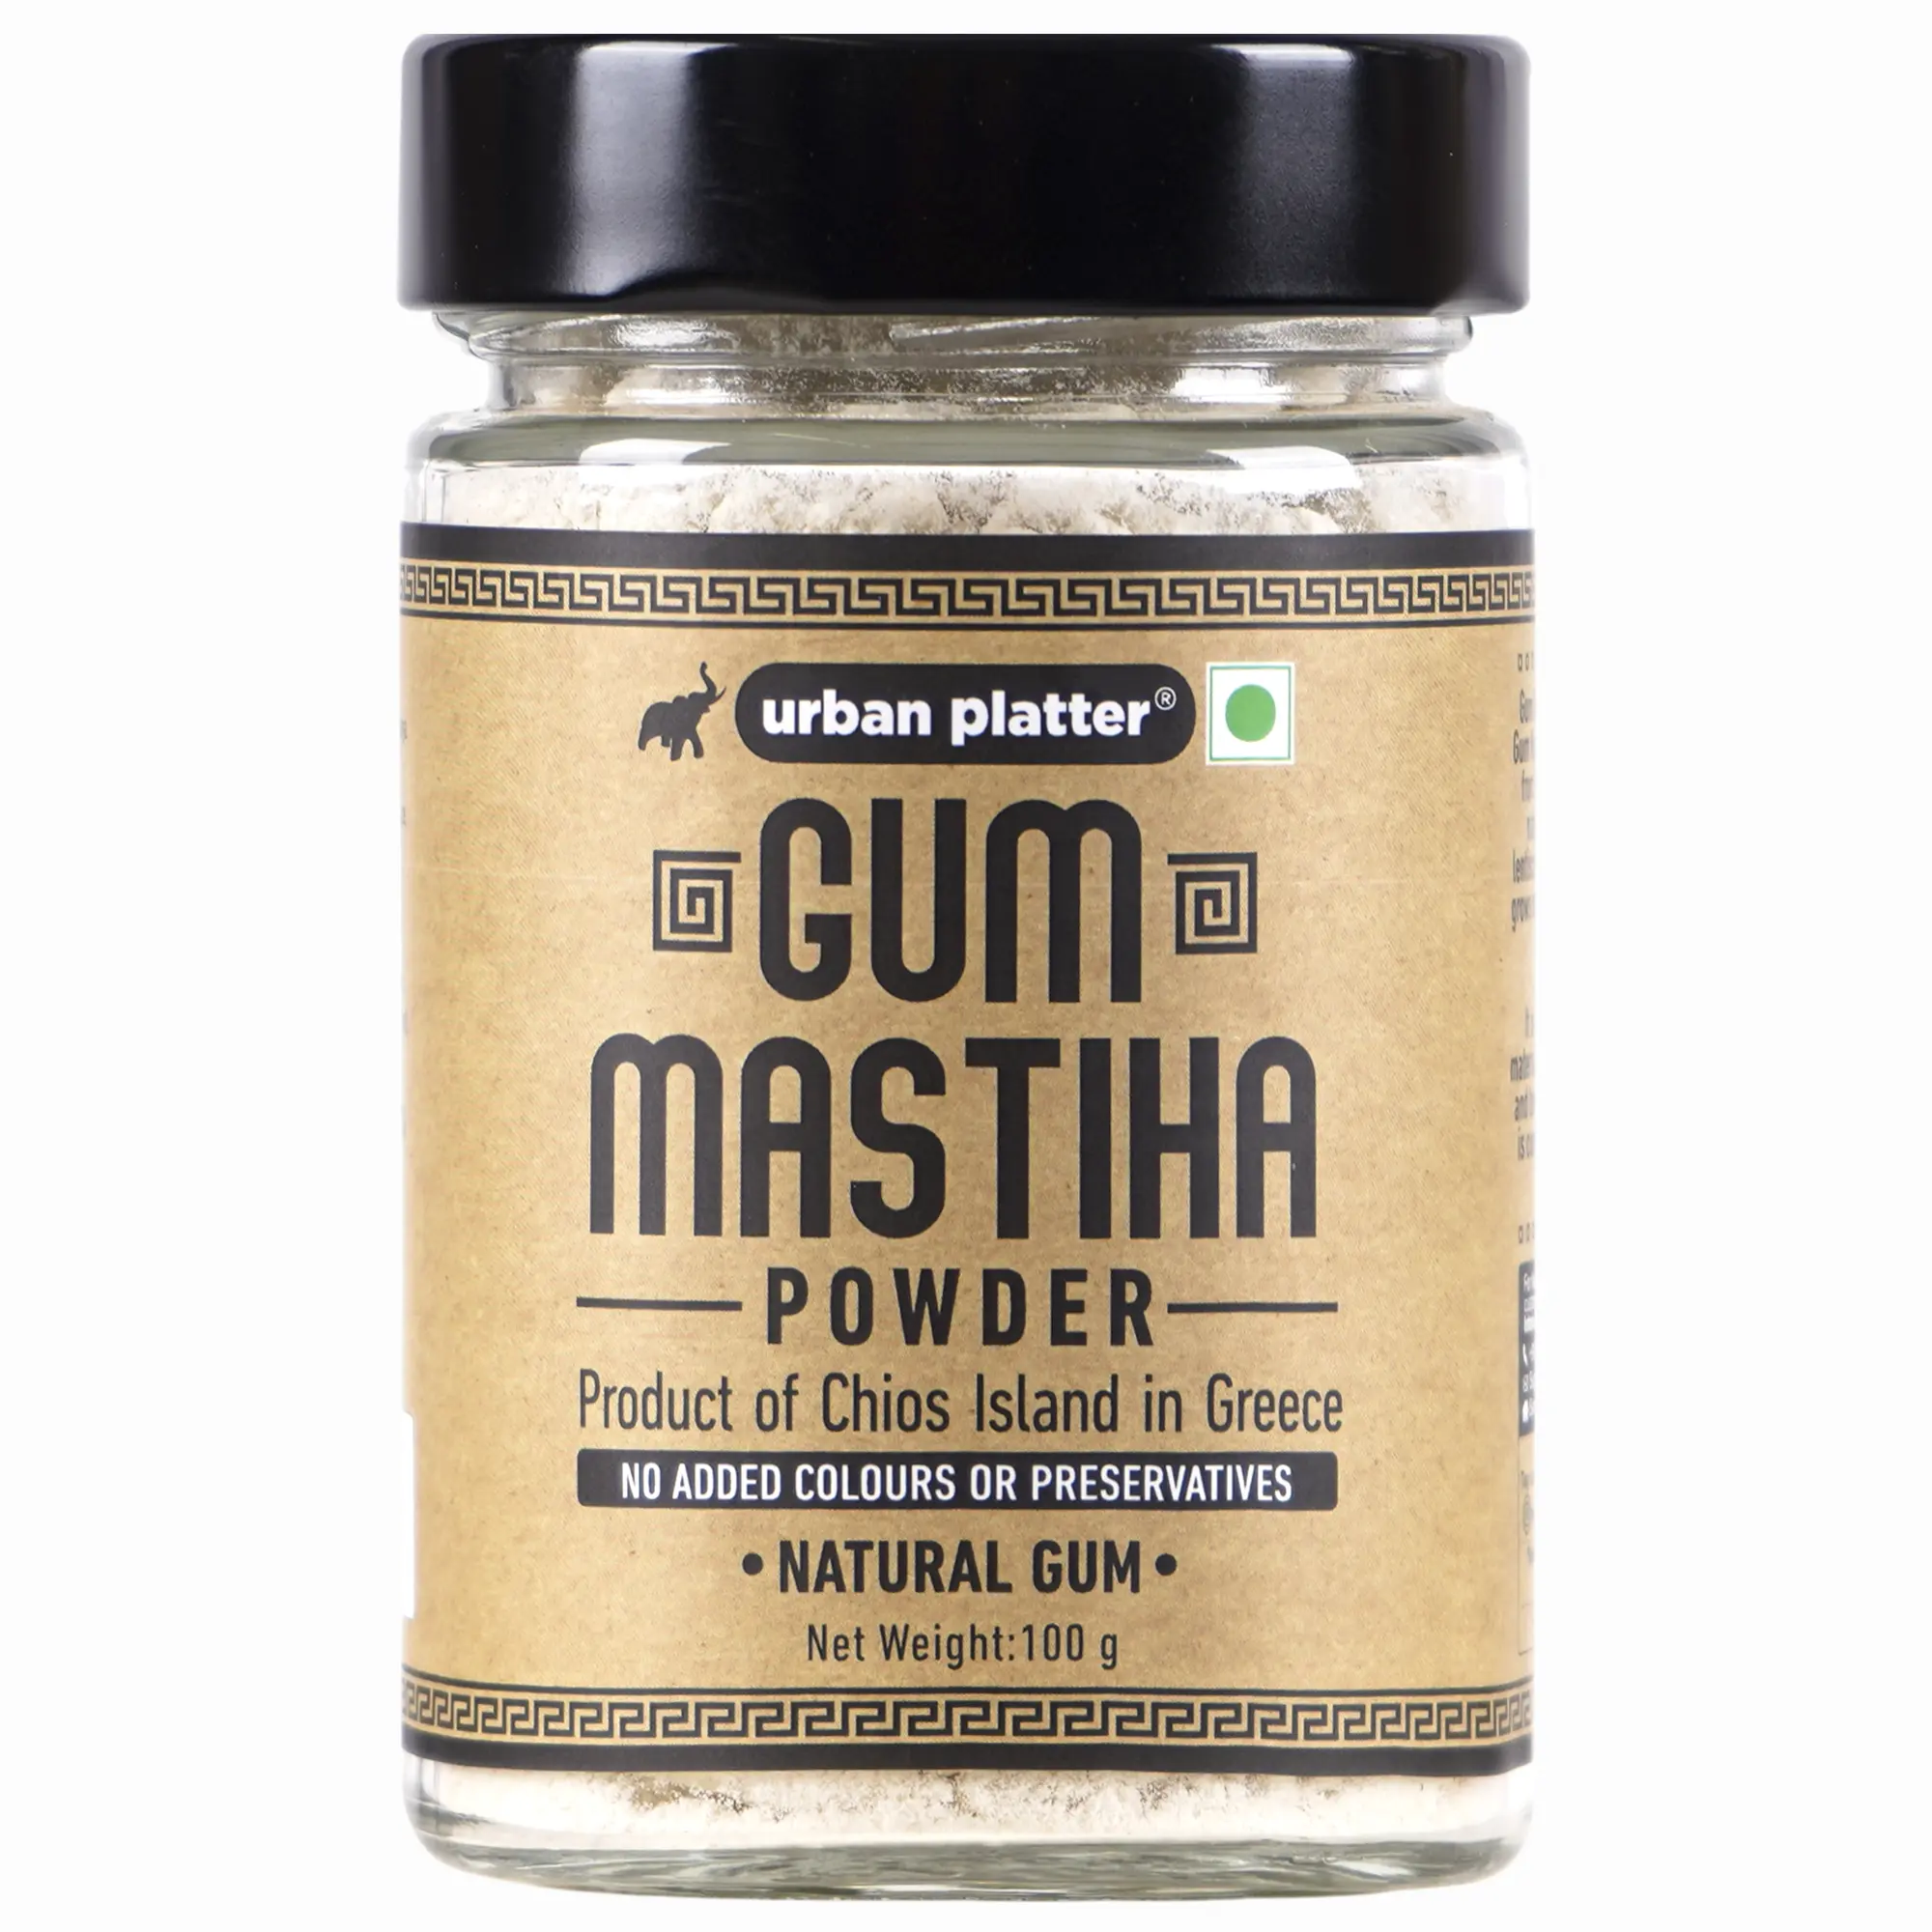 Mastic Gum Pistacia Lentiscus Greece 